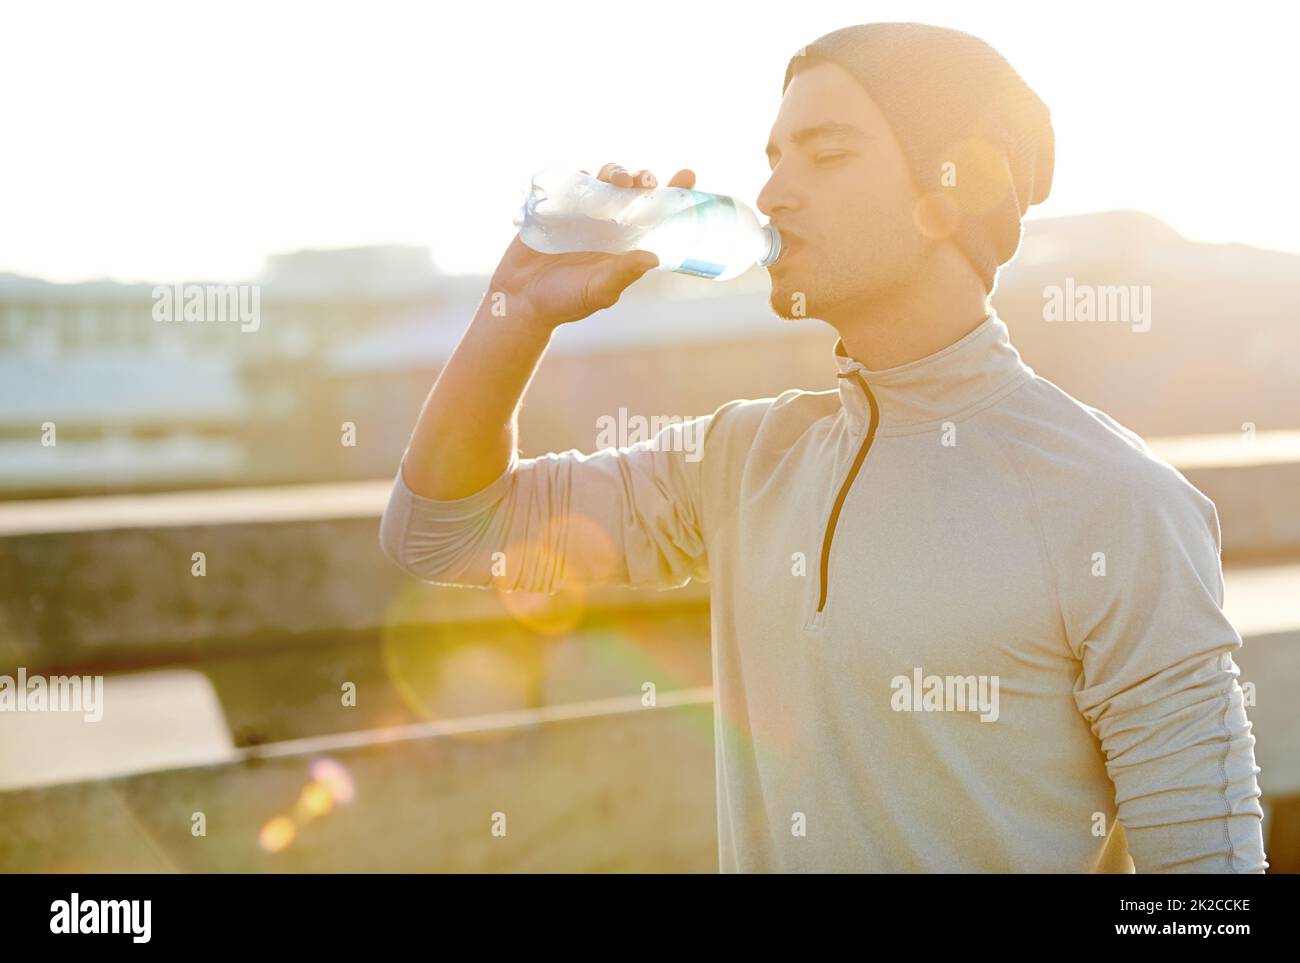 Courez vite, buvez profondément. Prise de vue d'un jeune homme qui boit de l'eau pendant qu'il est dehors pour une course dans la ville. Banque D'Images